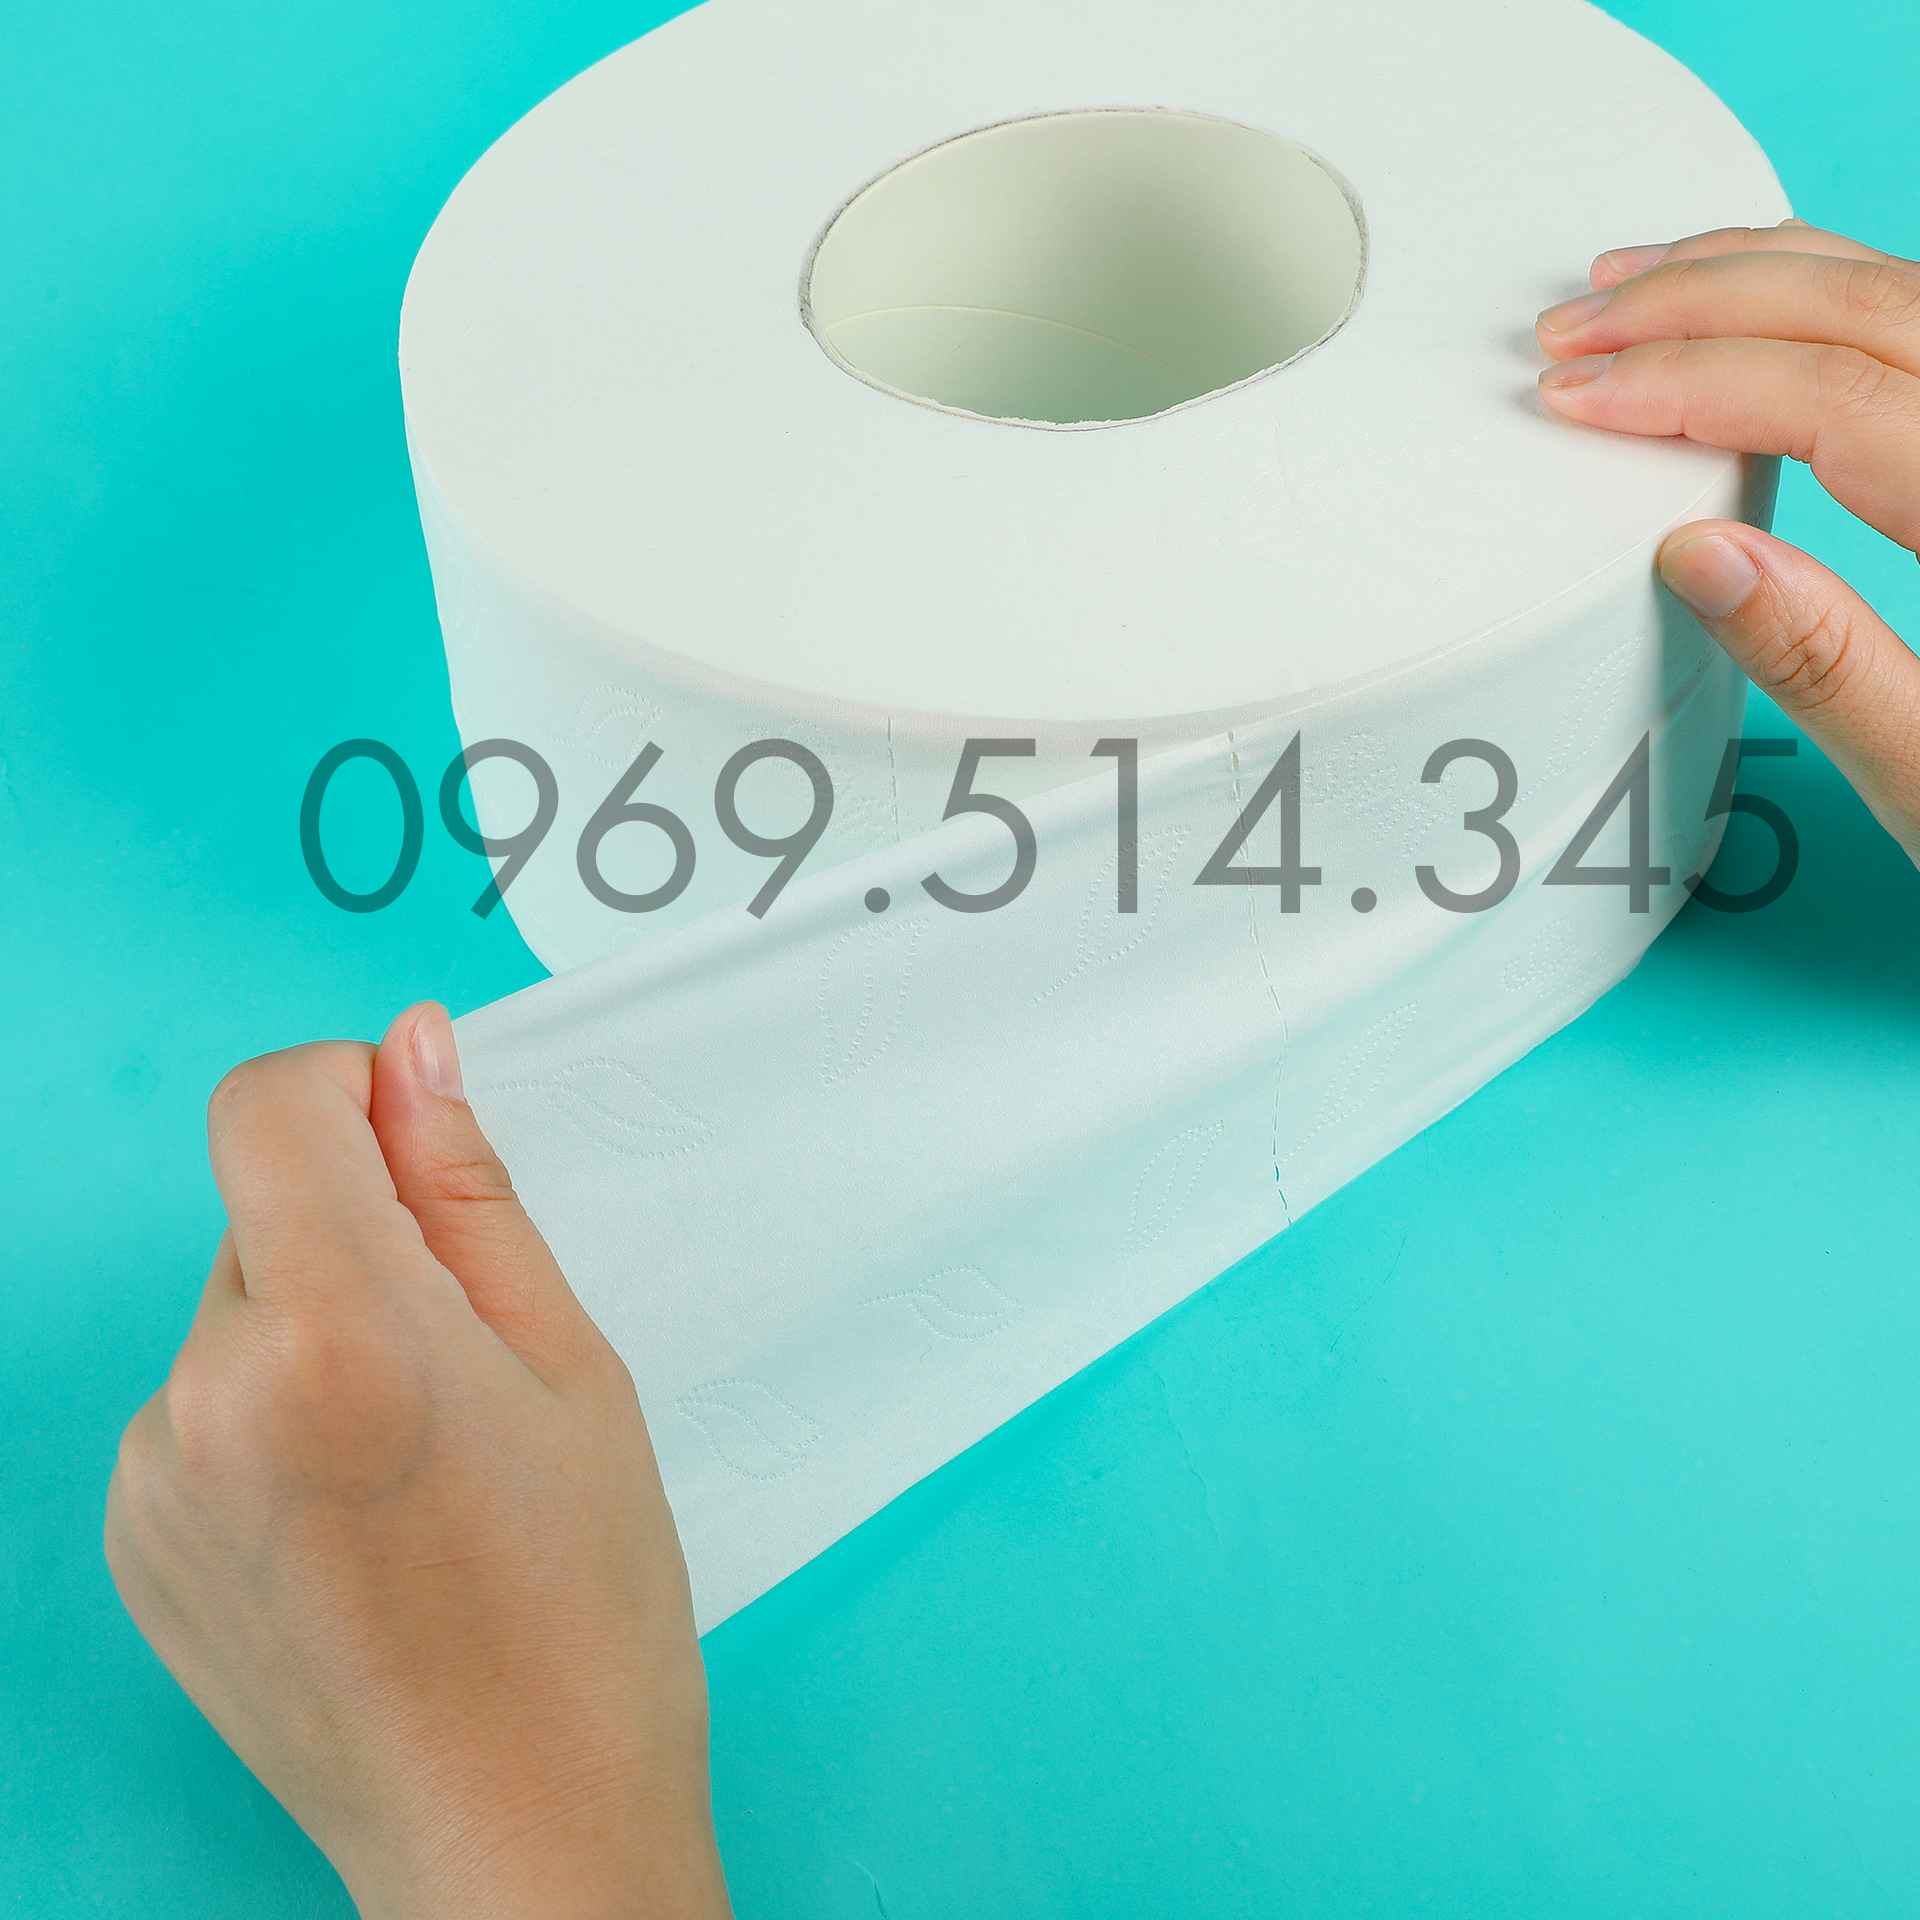 Cuộn giấy vệ sinh cuộn lớn có độ nén lớn, nặng 700g tương đương với 10-12 cuộn nhỏ